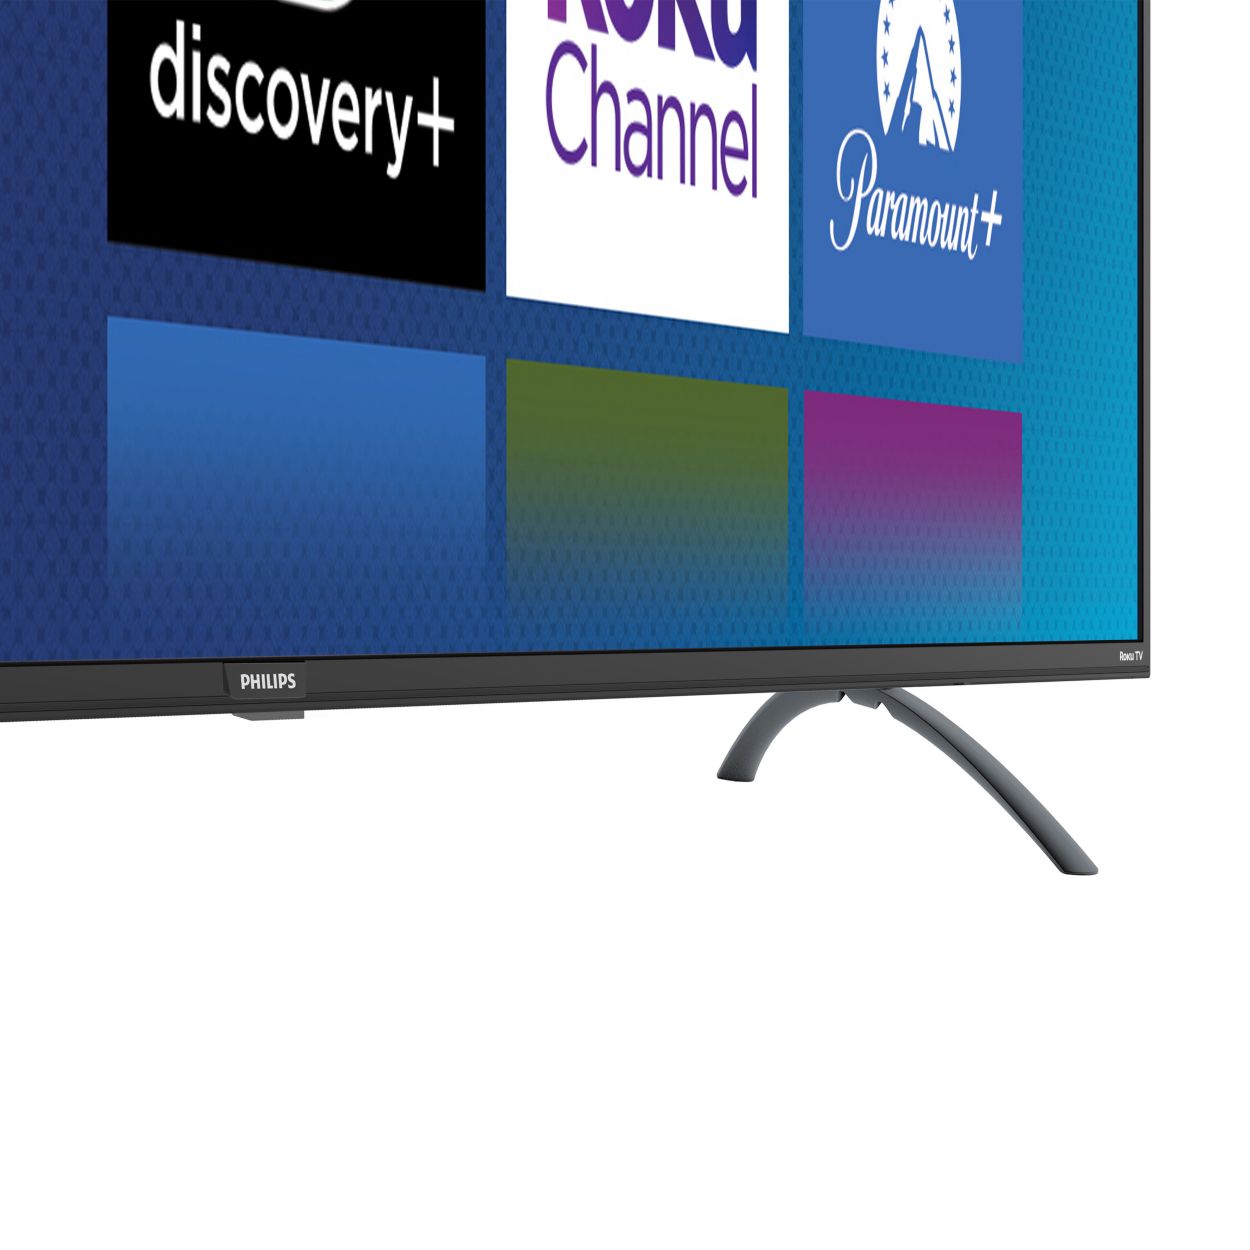 Søgemaskine markedsføring at opfinde eksplicit 5000 series LED-LCD TV 70PFL5656/F7 | Roku TV